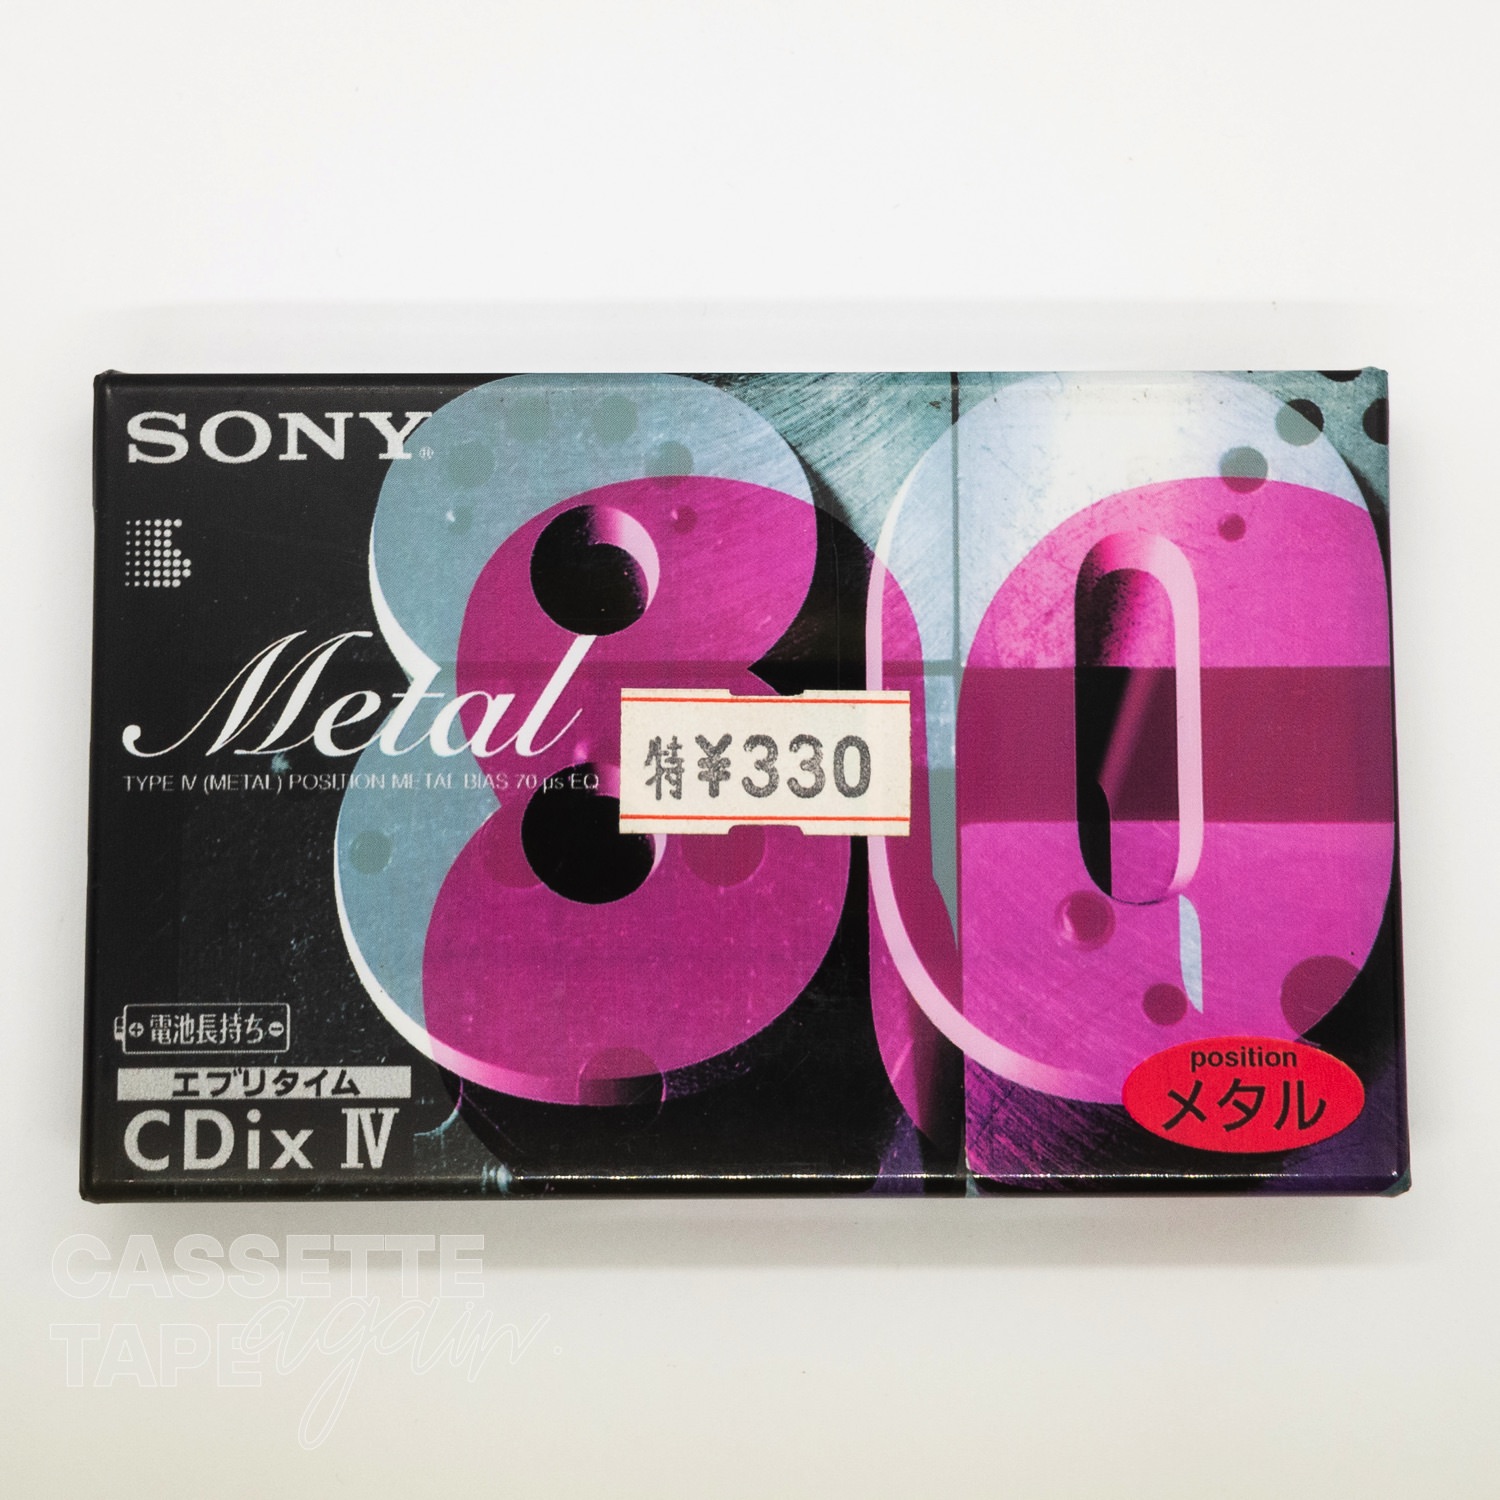 CDixIV 80 / SONY(メタル)